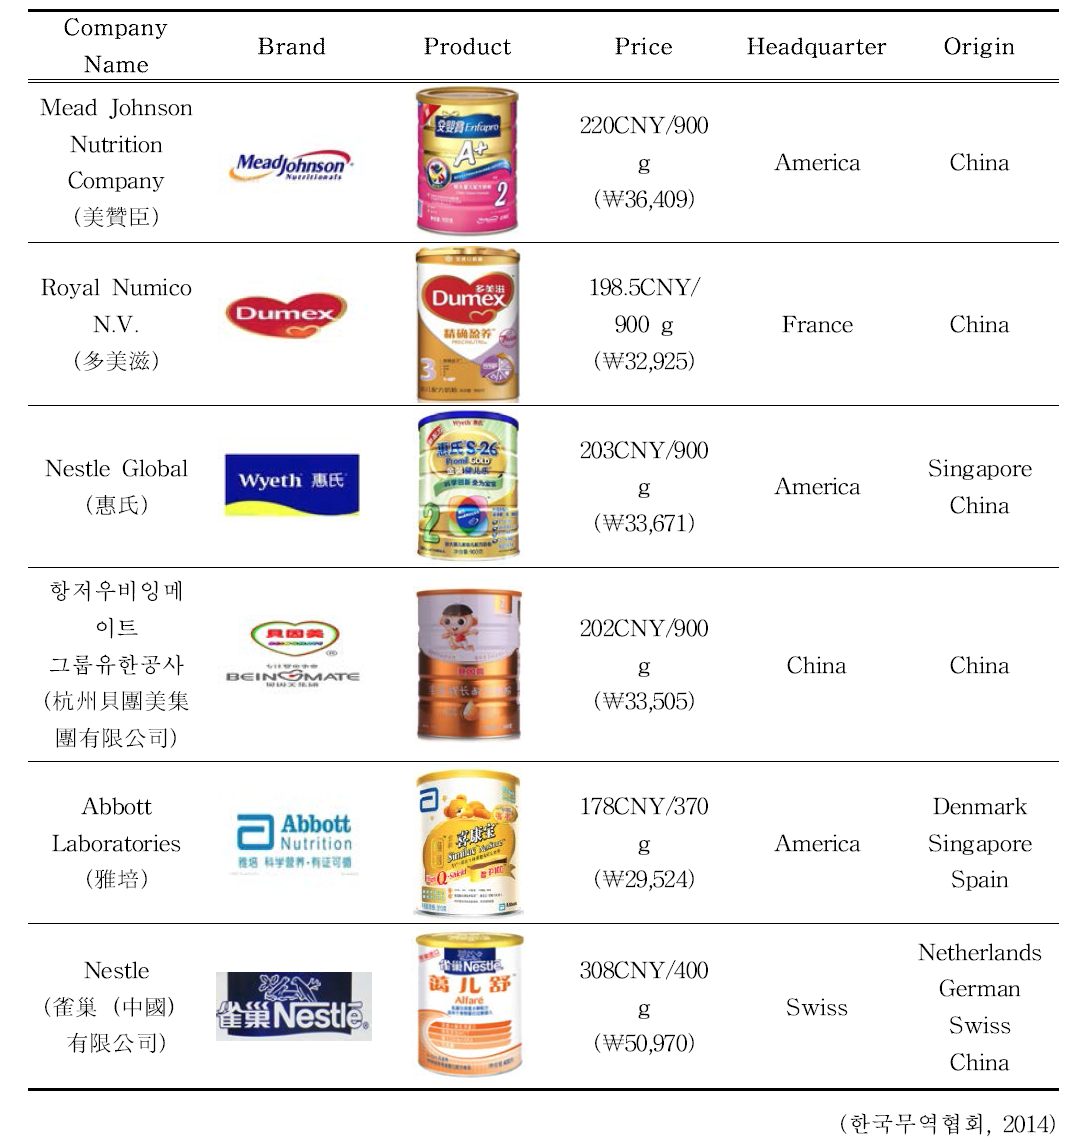 중국 프리미엄 조제분유 시장의 주요 브랜드 분석